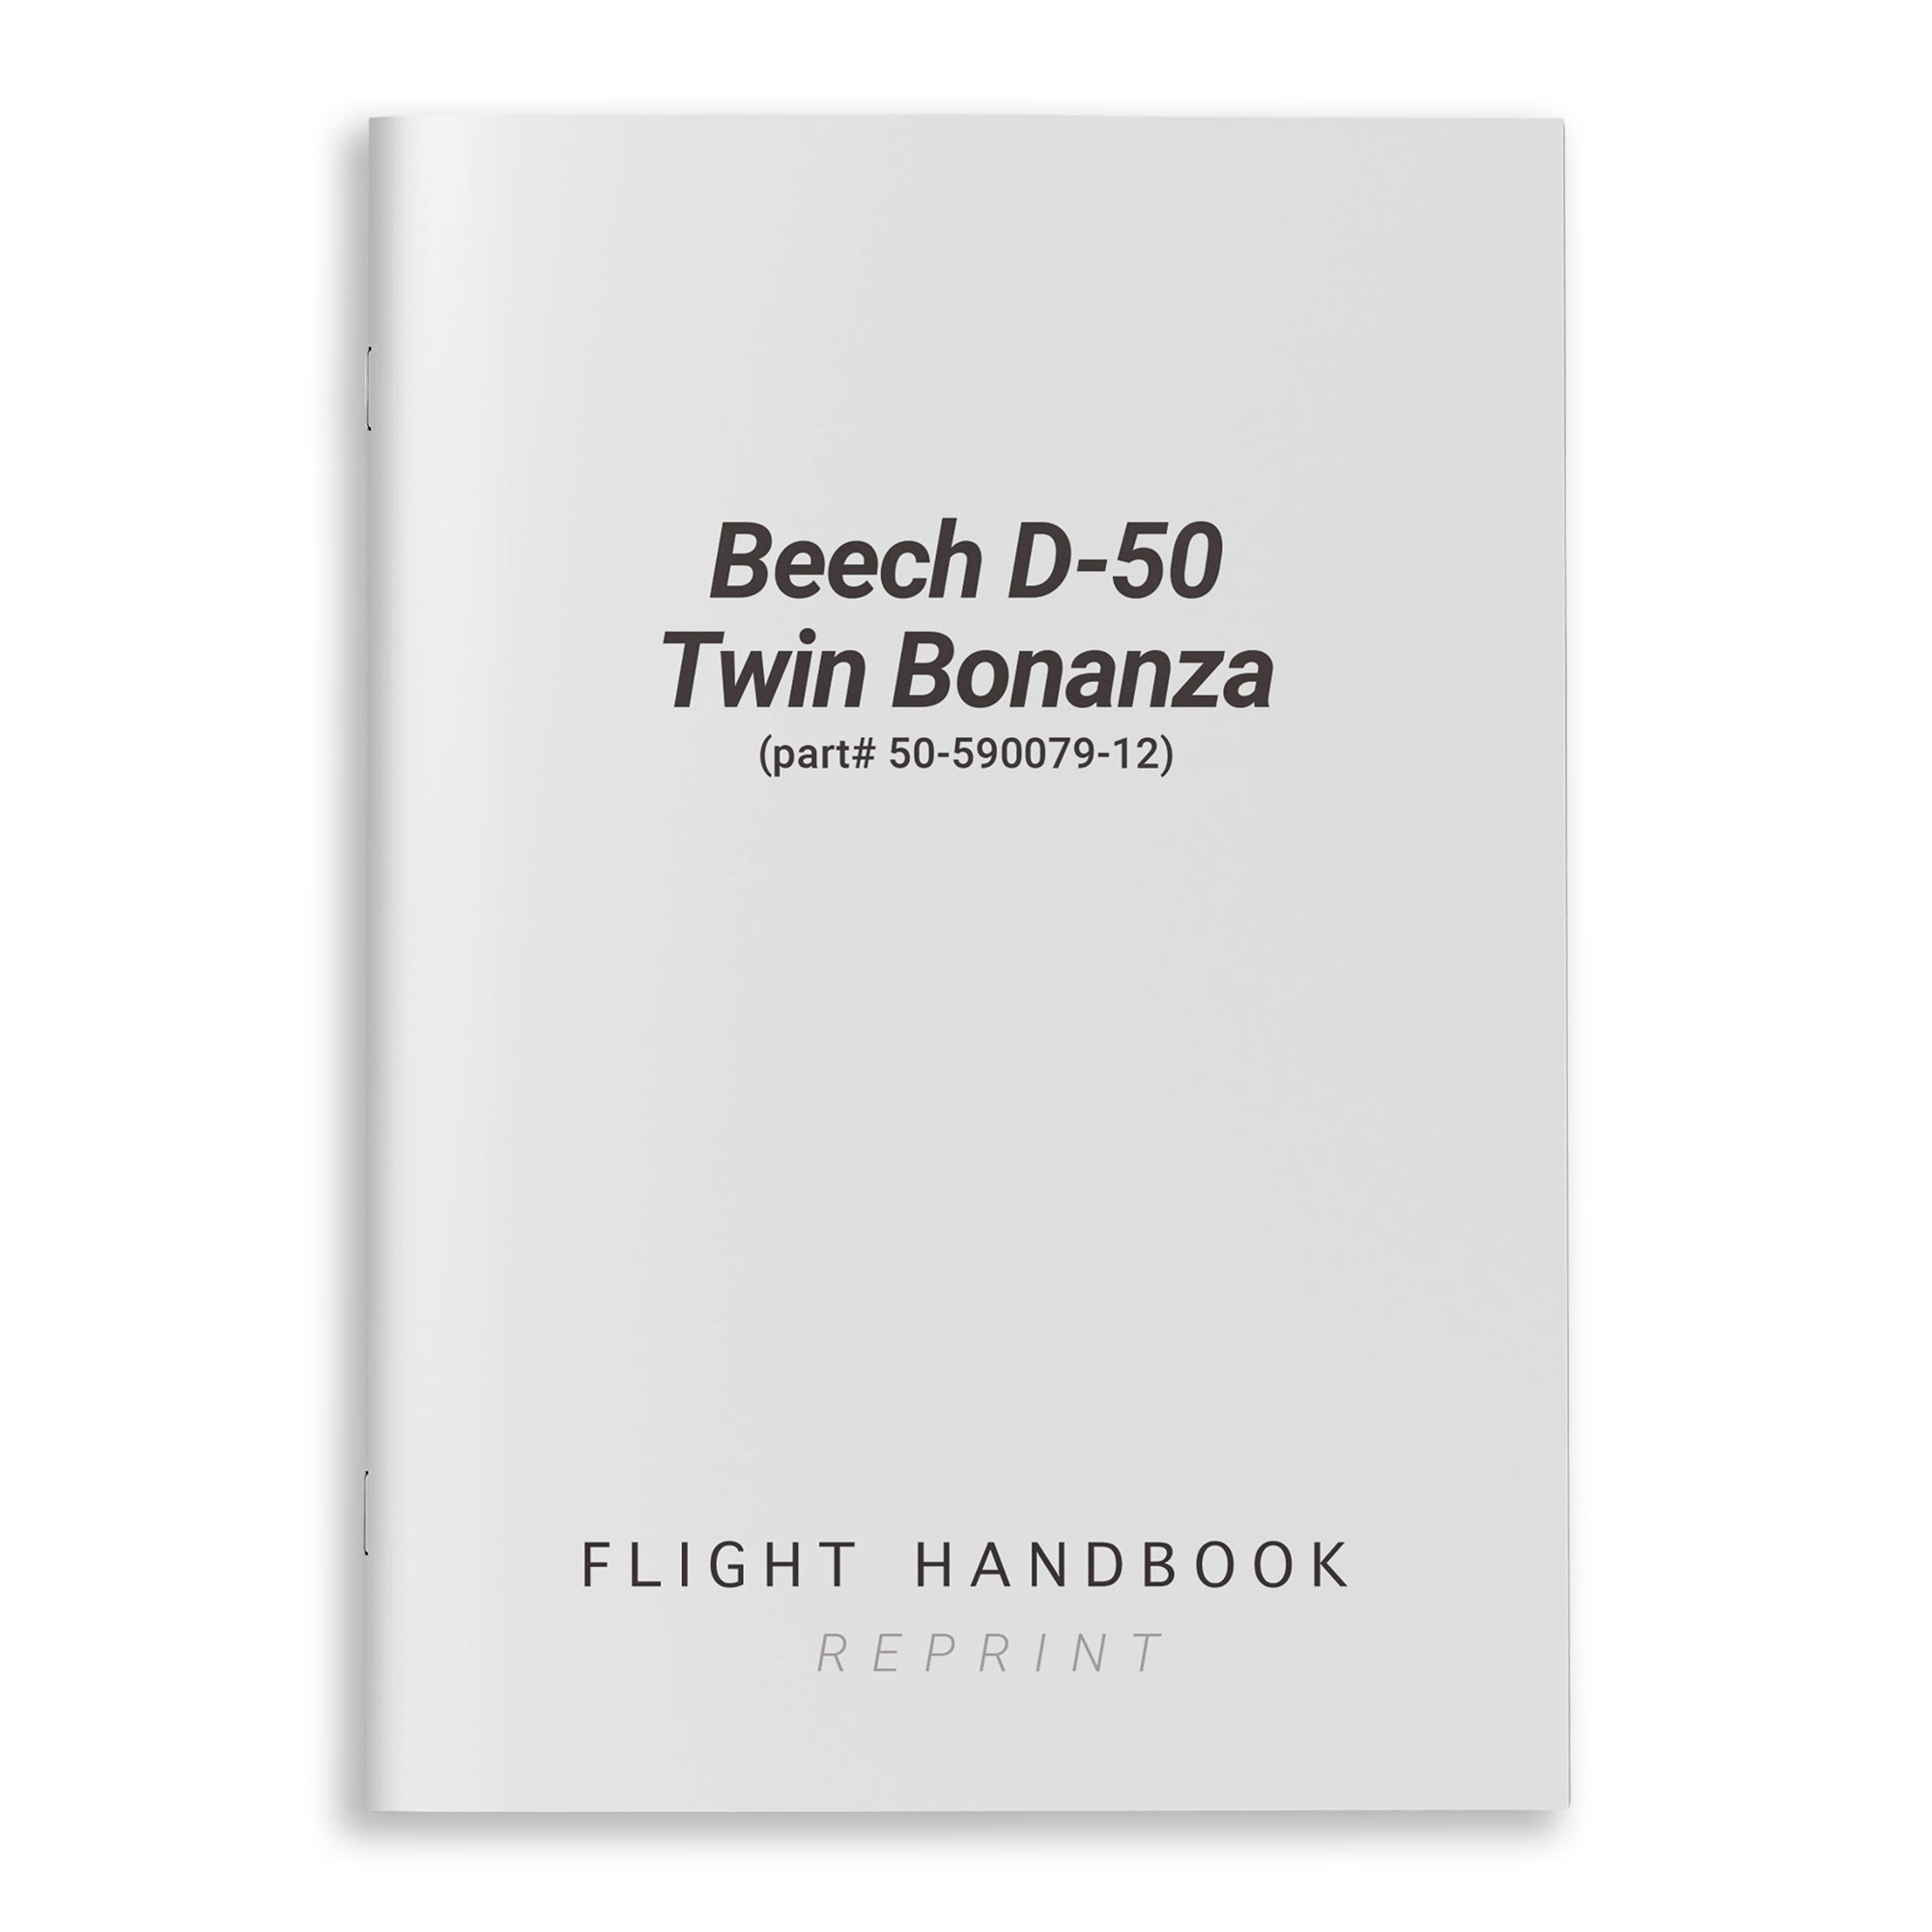 Beech D-50 Twin Bonanza Flight Handbook (part# 50-590079-12) - PilotMall.com